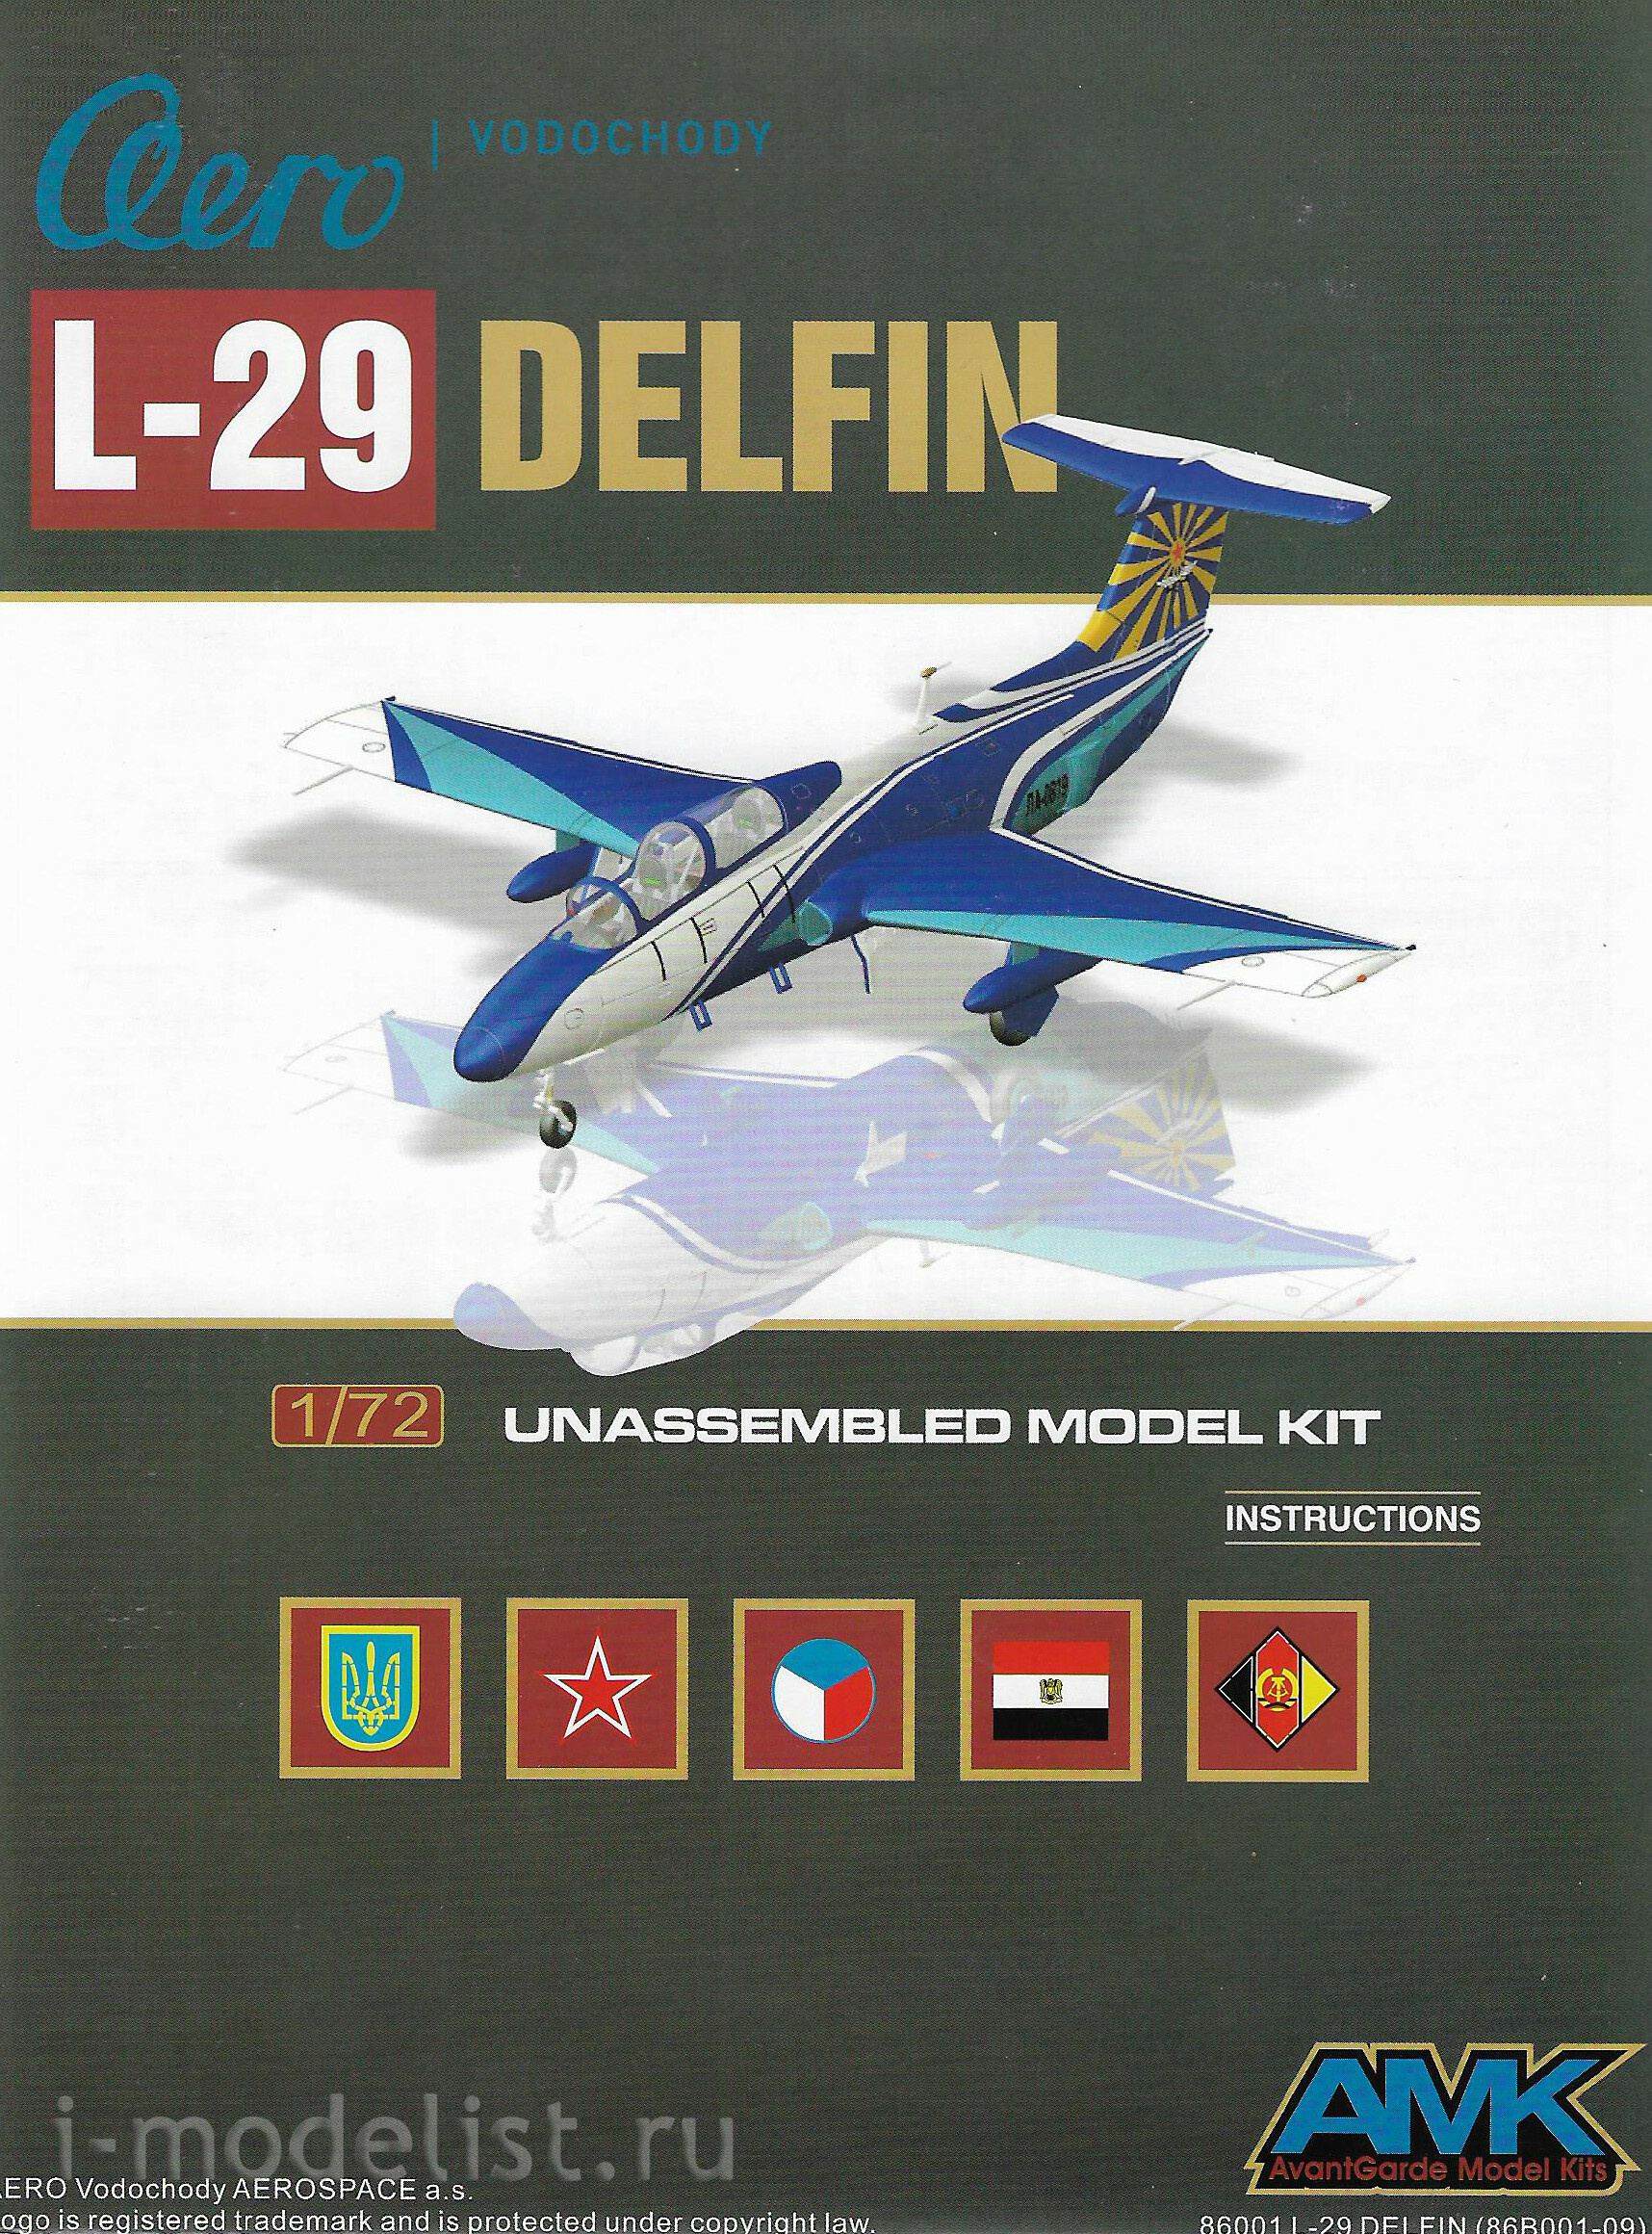 86001 AMK 1/72 Самолёт L-29 Delfin